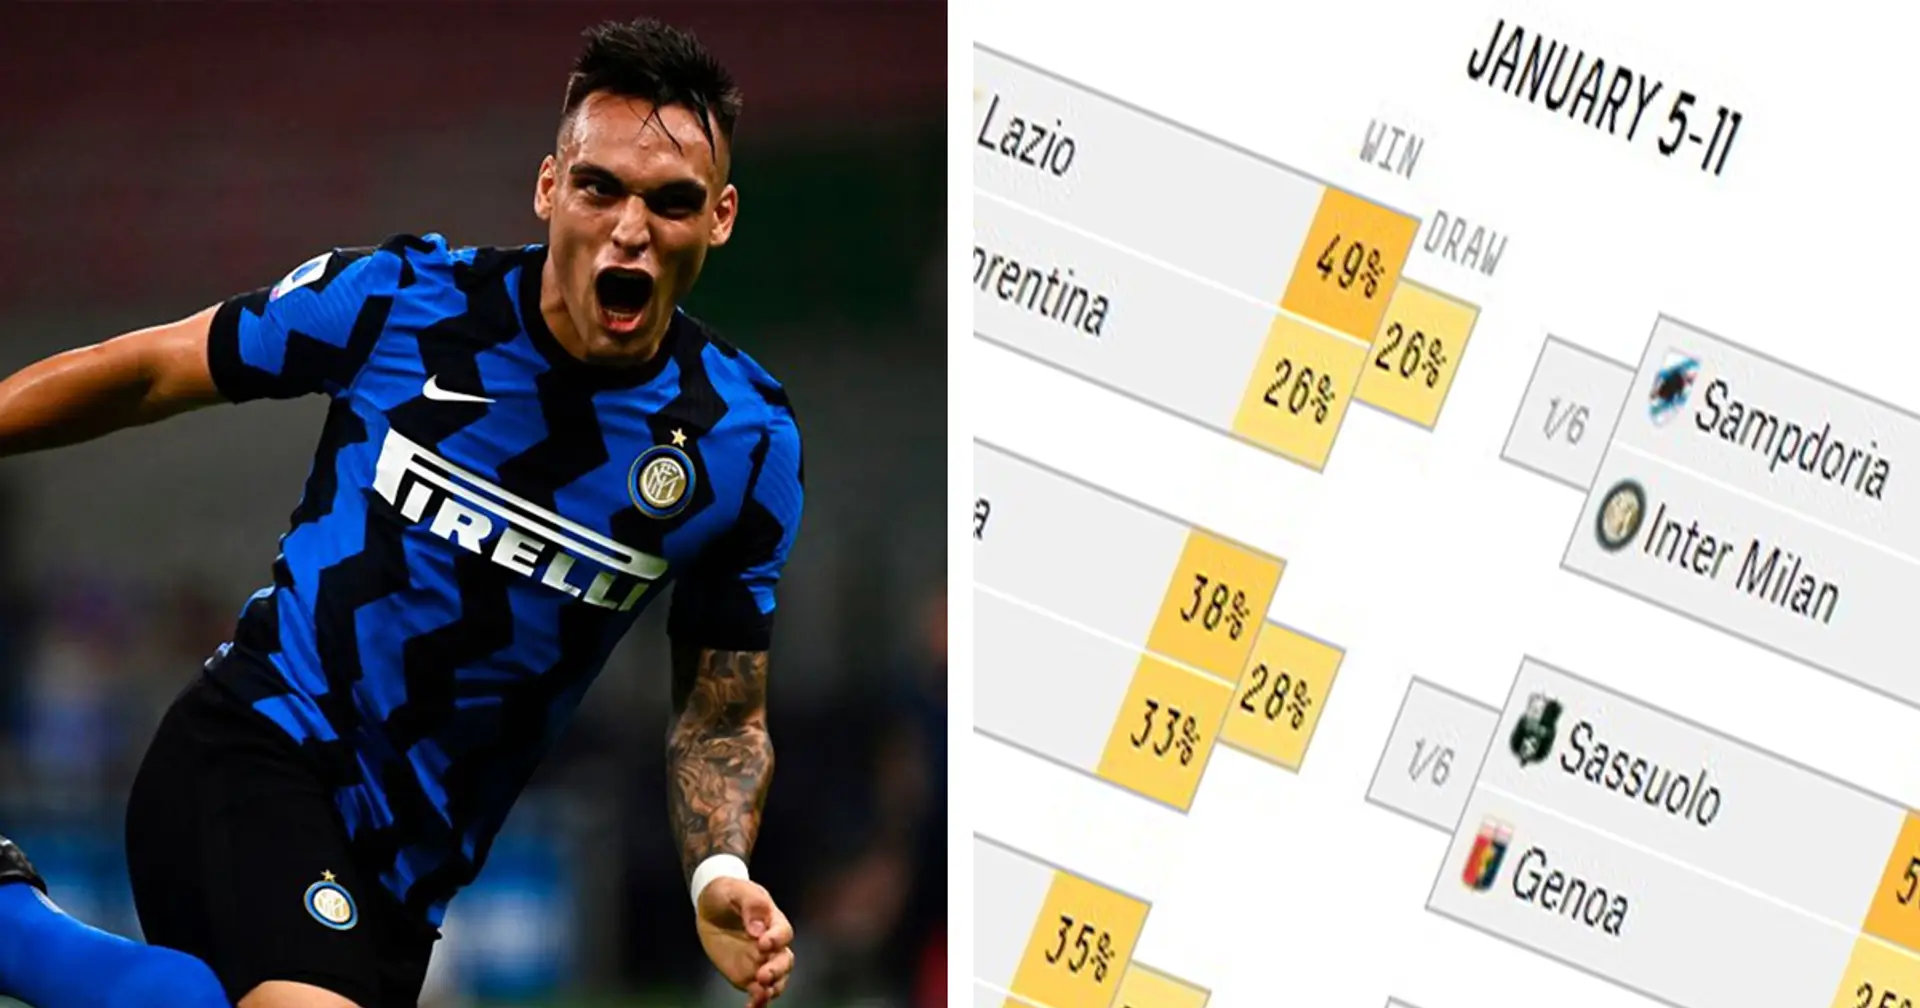 L'Inter batterà la Sampdoria? Un supercomputer predice il risultato della partita odierna